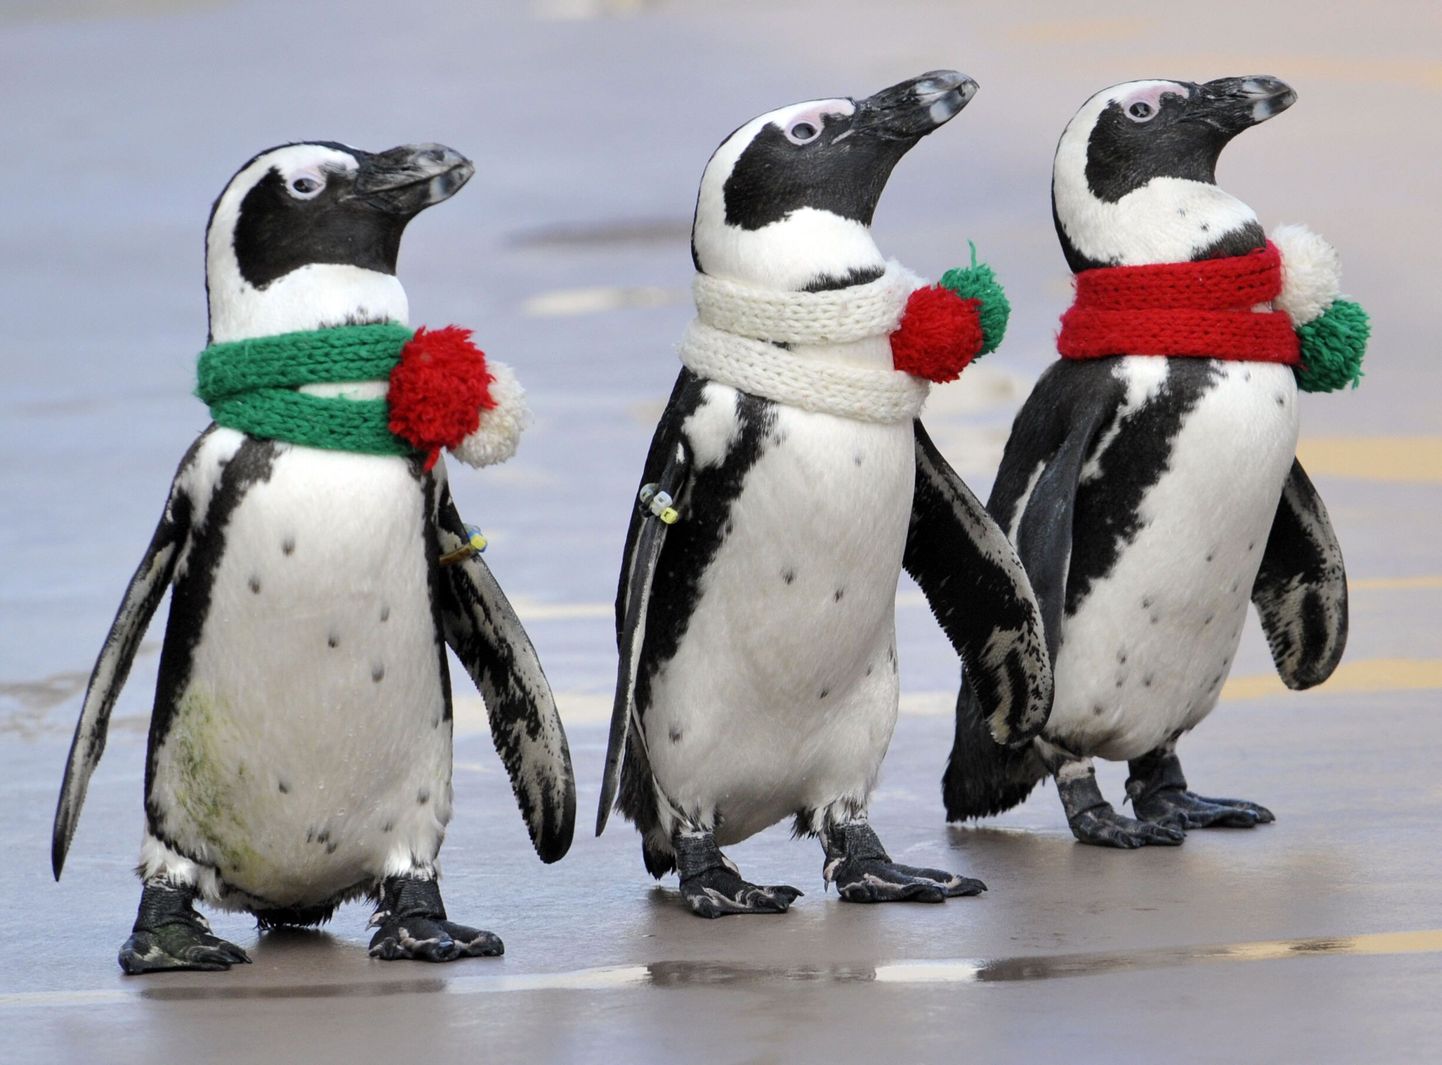 Jõulumeeleolus pingviinid Yokohamas